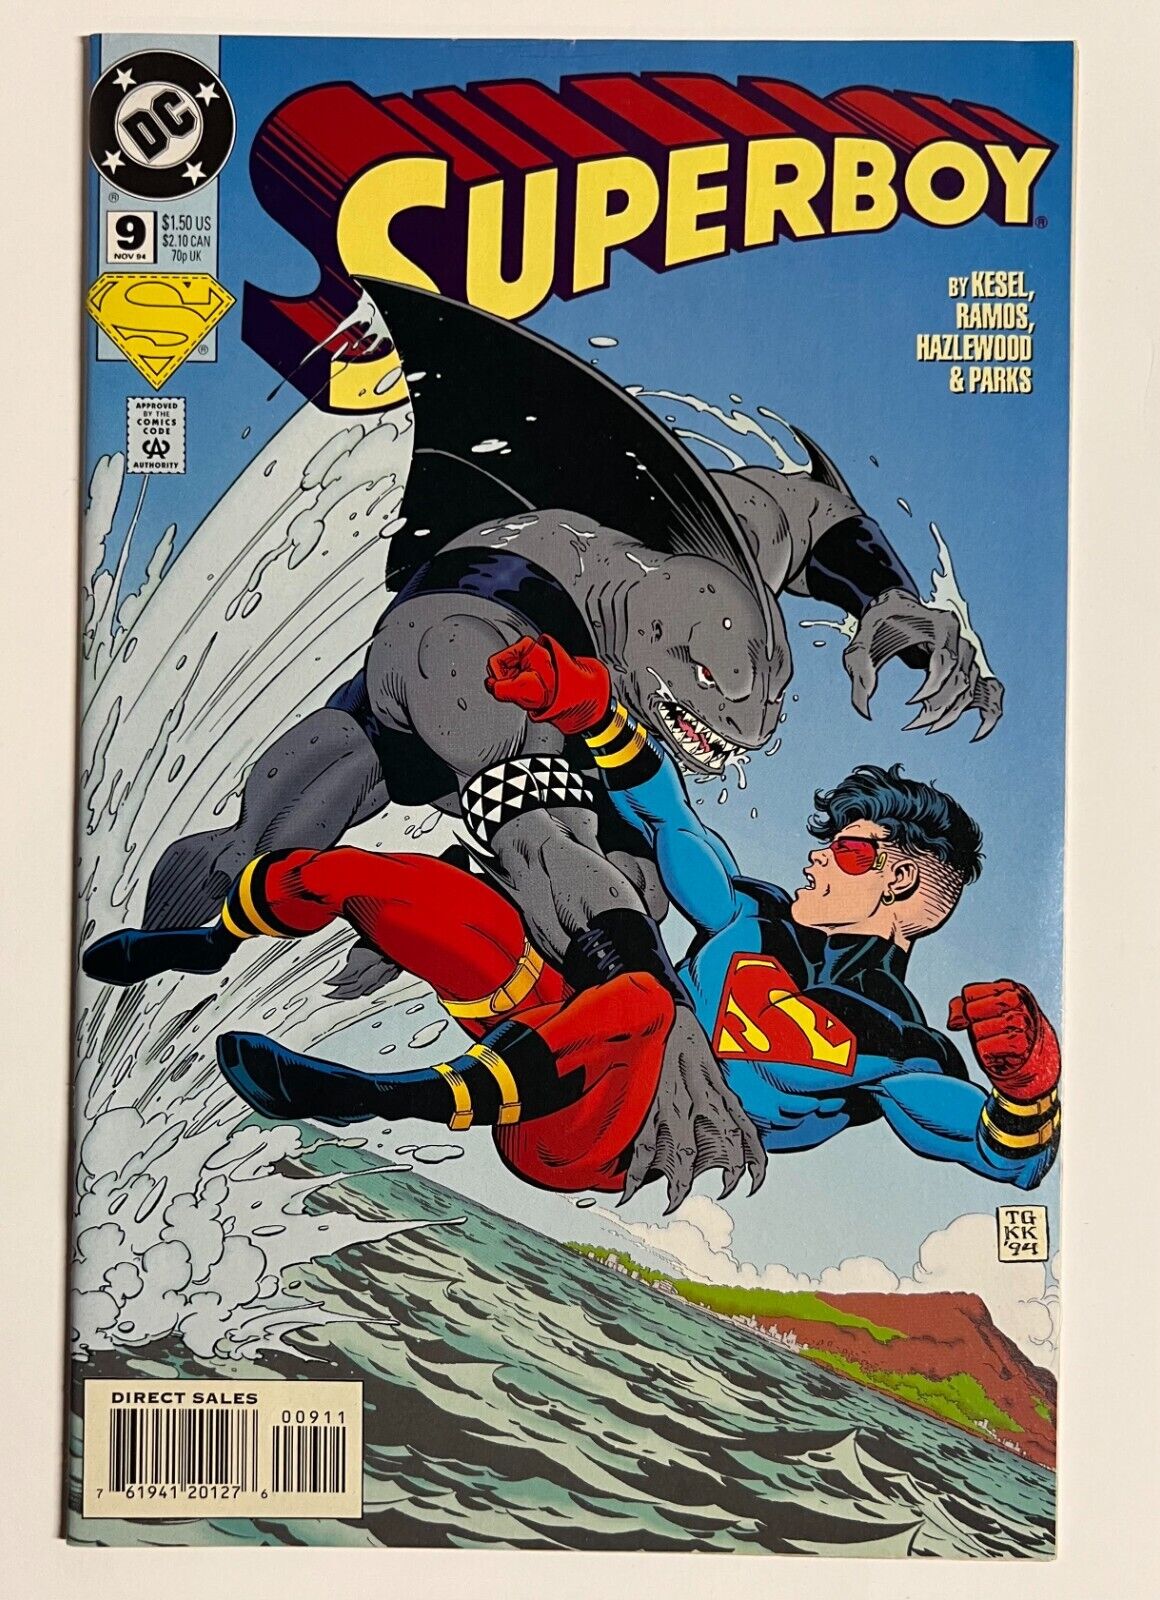 Superboy #9 (1994) - 1st Full Appearance of King Shark